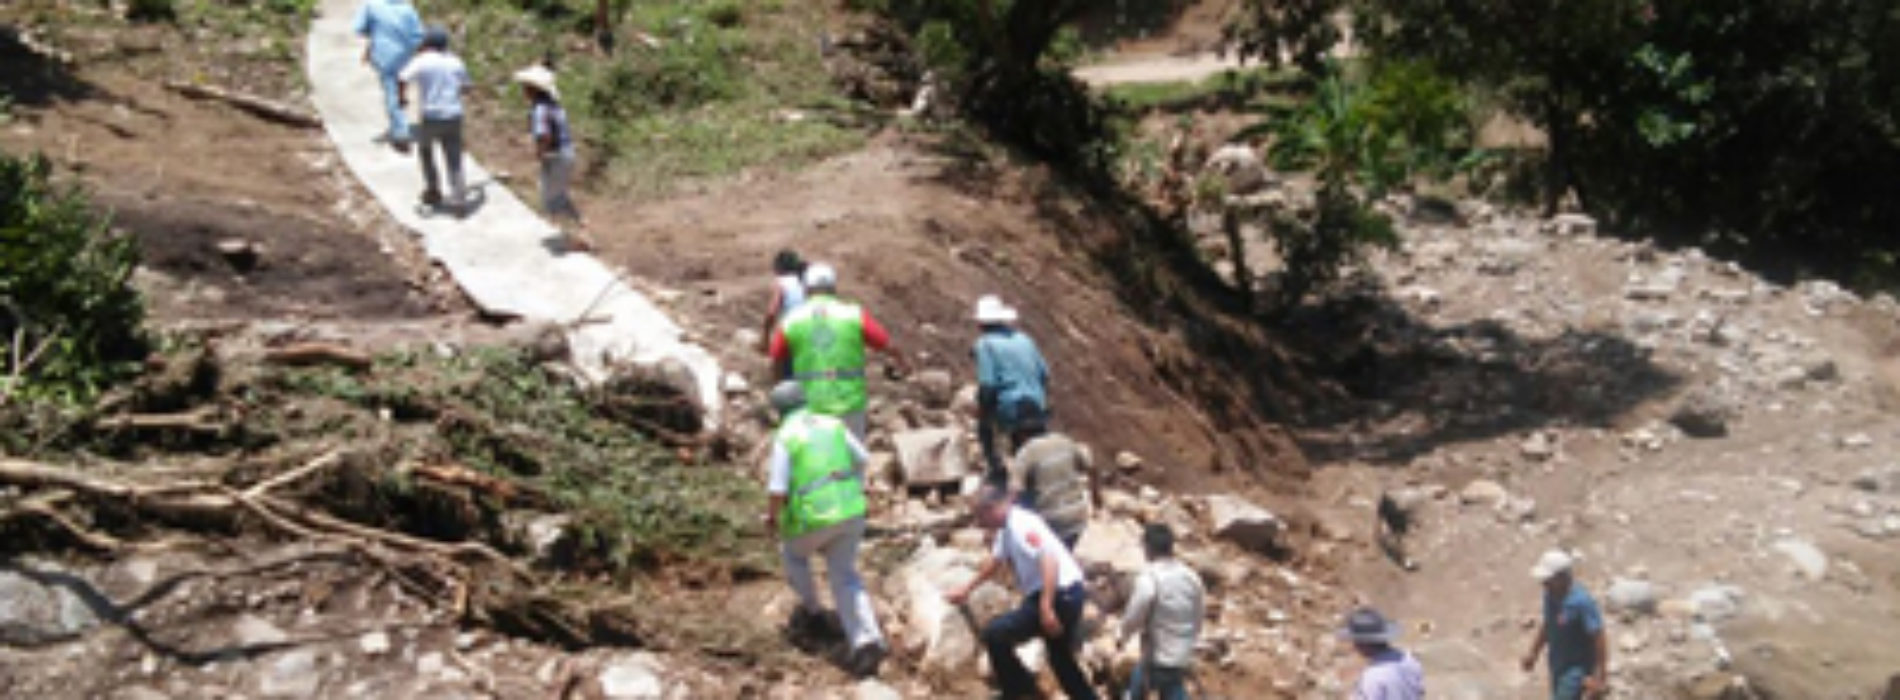 Personal de Protección Civil y Bomberos recorren zona afectada por deslave en la Soledad, Mesones Hidalgo